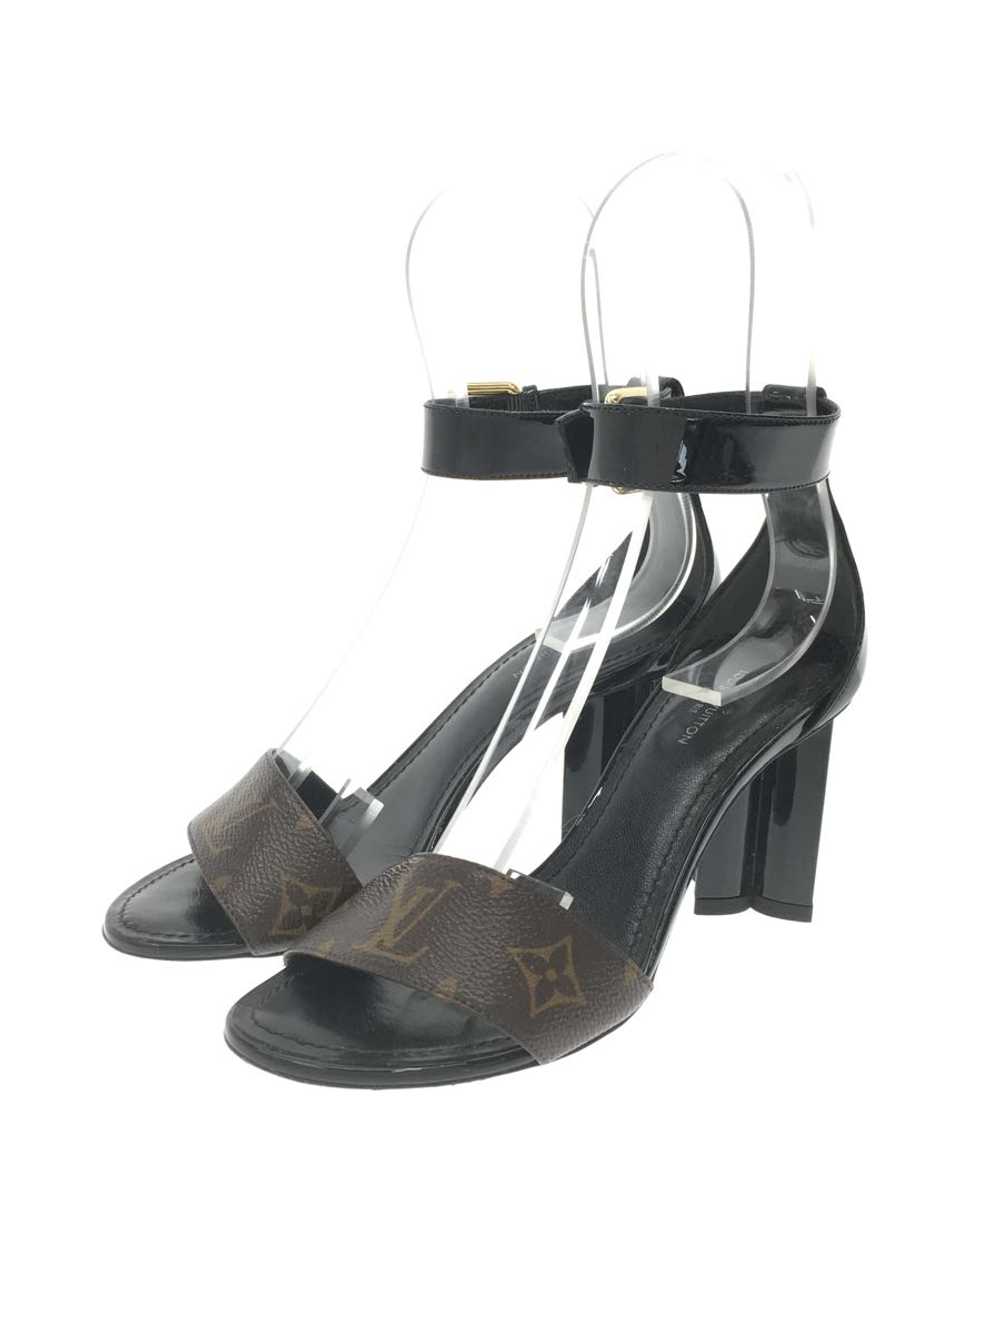 Louis Vuitton Sandals/34.5/Blk/Silhouette Line/Mo… - image 2